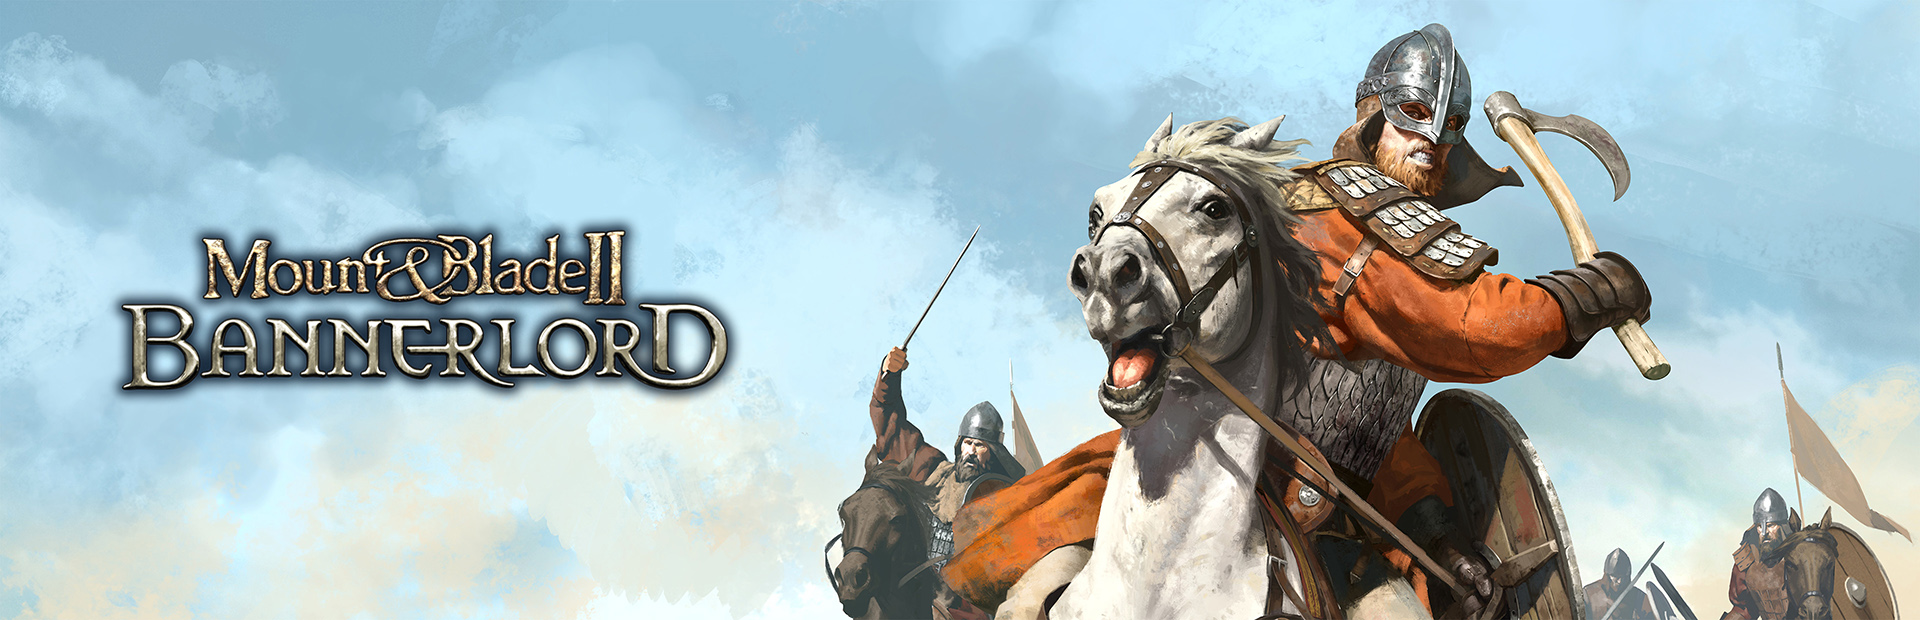 دانلود بازی Mount & Blade II: Bannerlord برای PC | گیمباتو